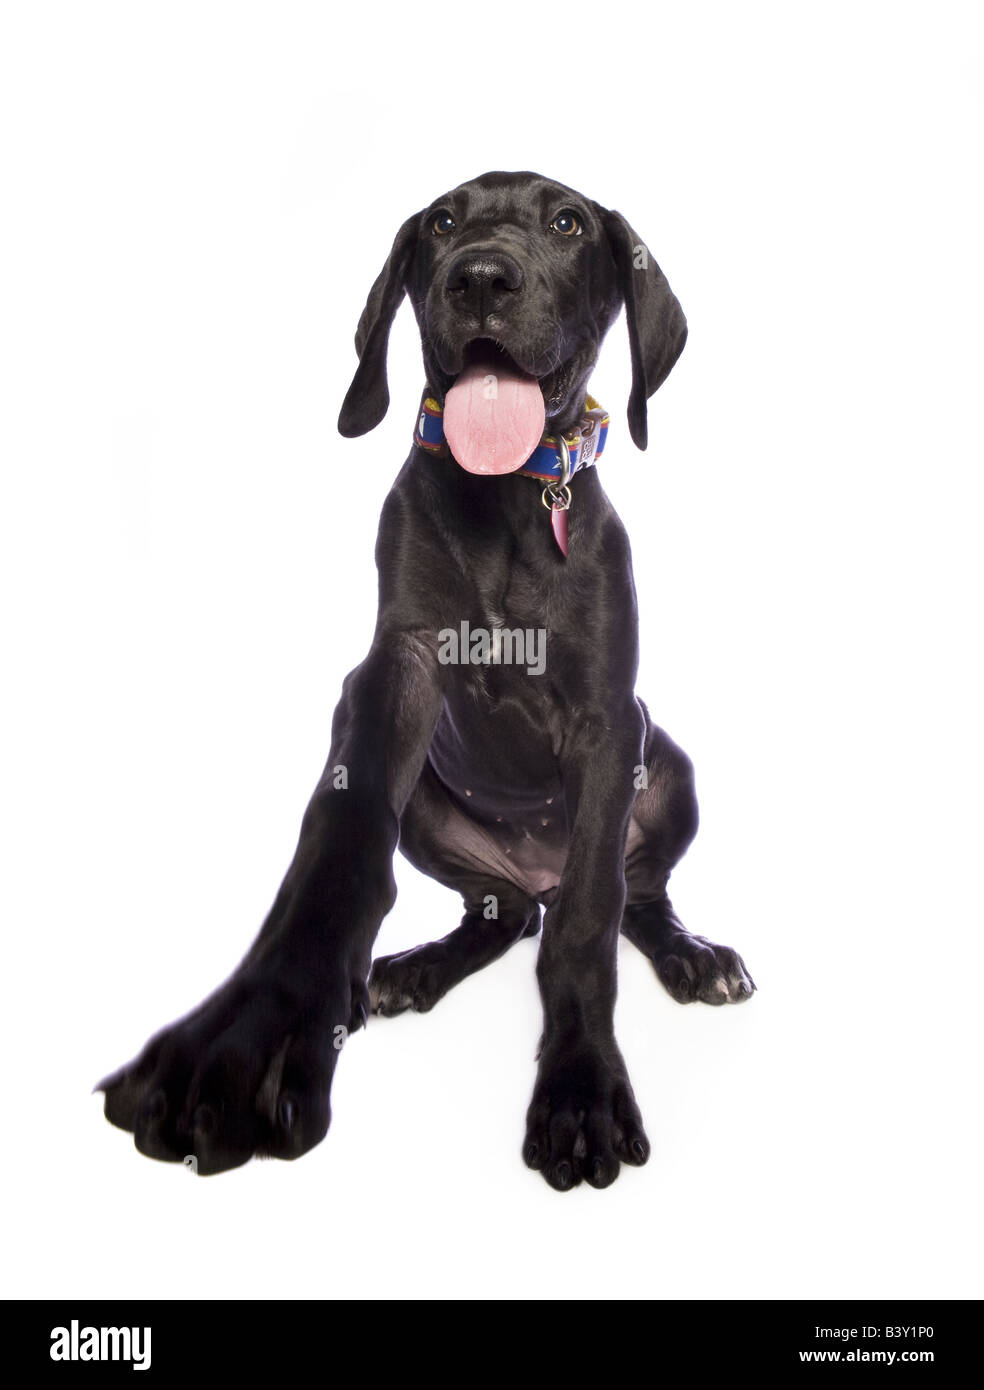 Adorable black Alano cucciolo isolato su sfondo bianco Foto Stock